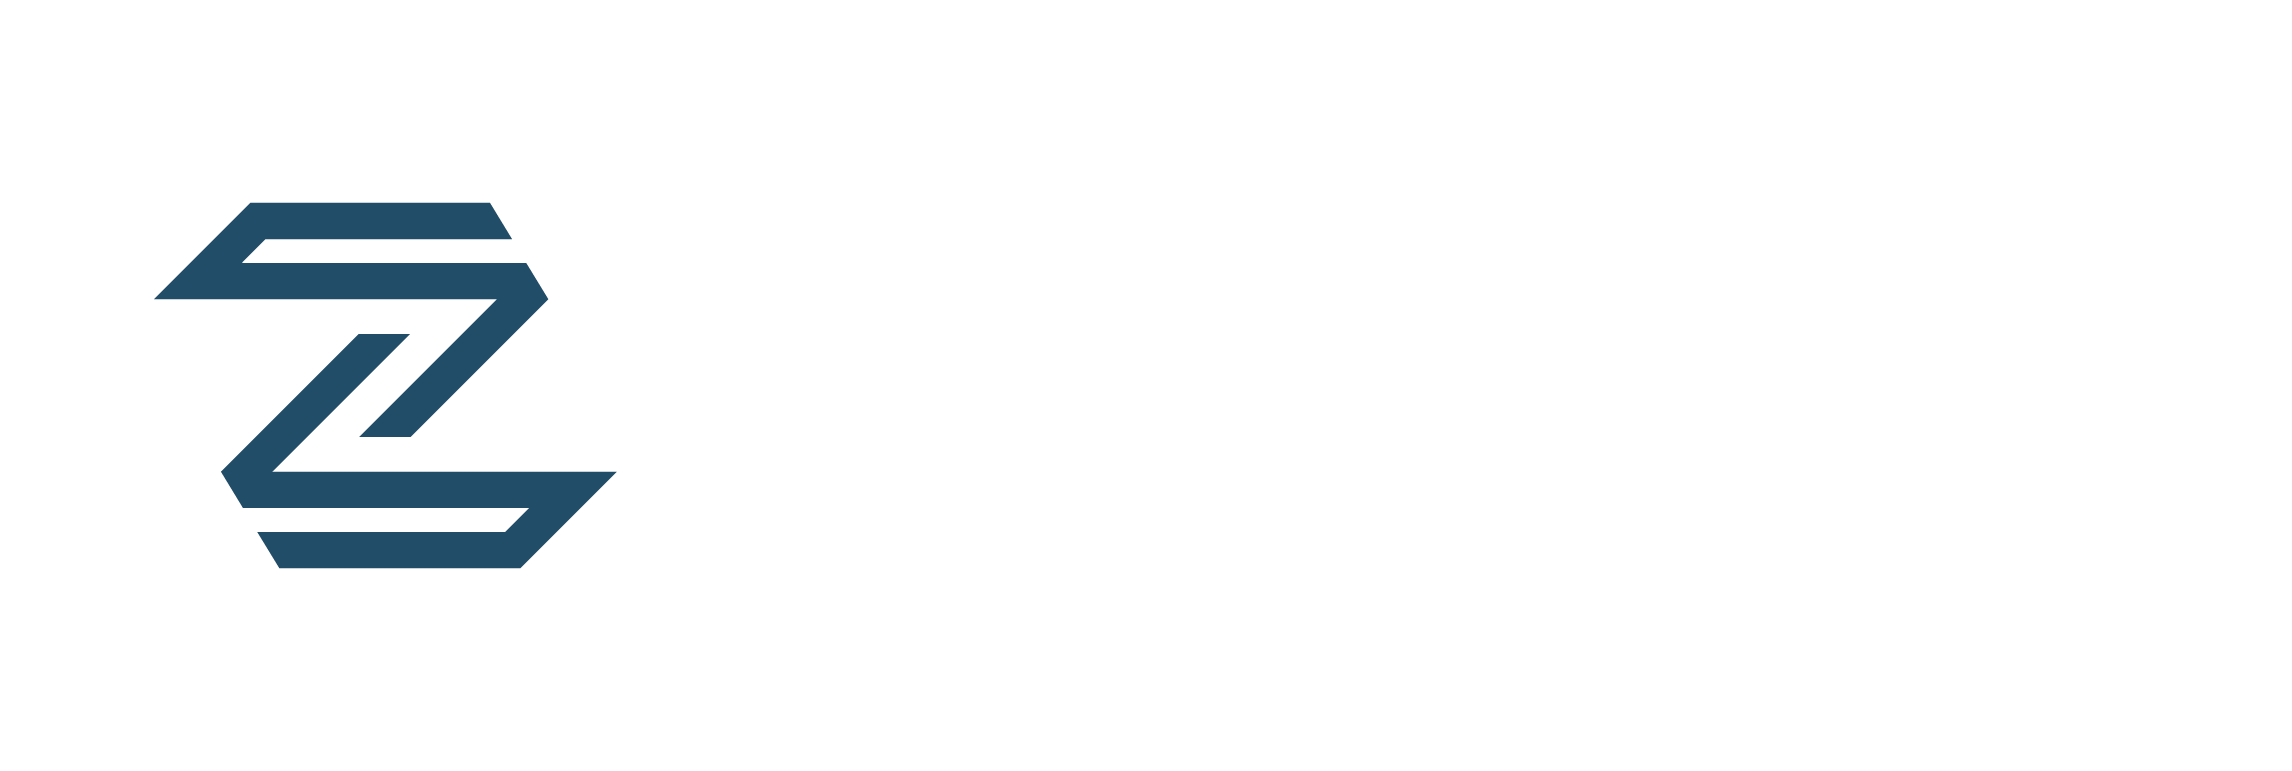 Zeus PPF Logo White